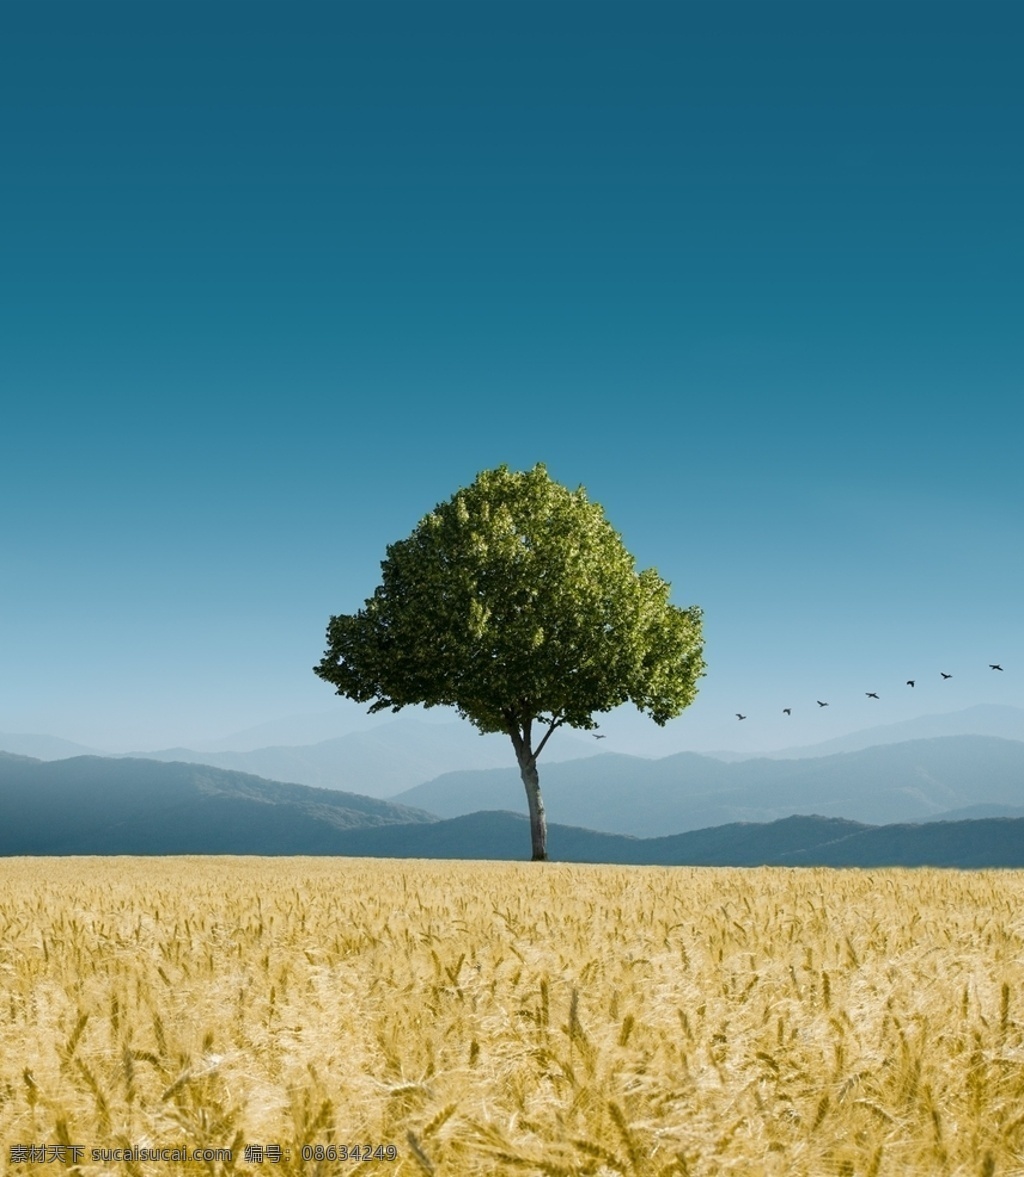 麦子图片 麦子 麦迪 山脉 树木 麦田 丰收季 蓝天 白云 美景 风景 自然景观 自然风景